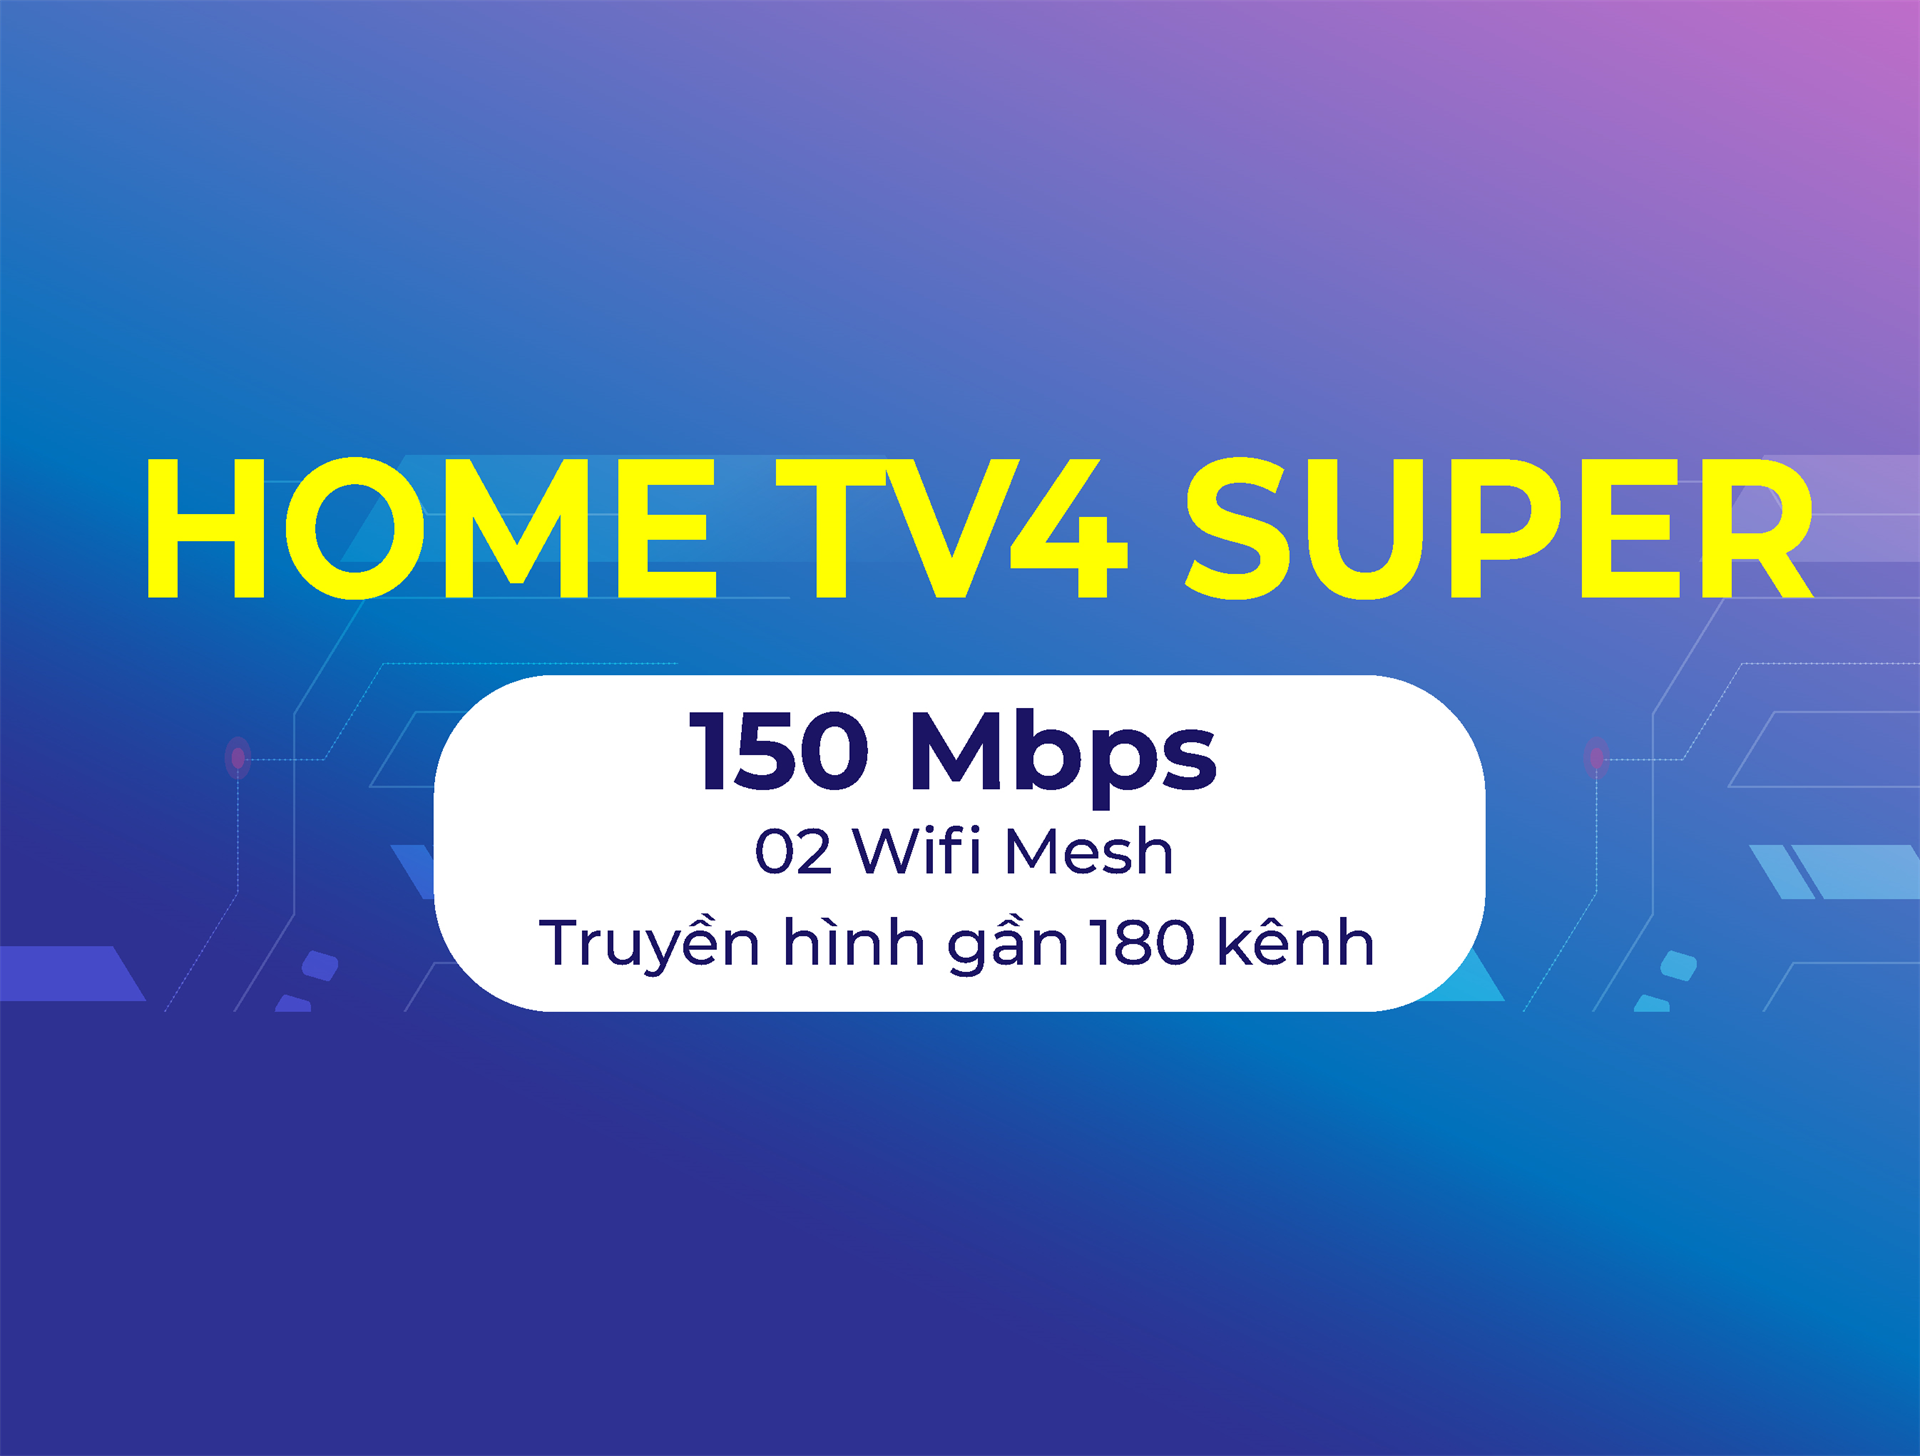 Home TV4 Super